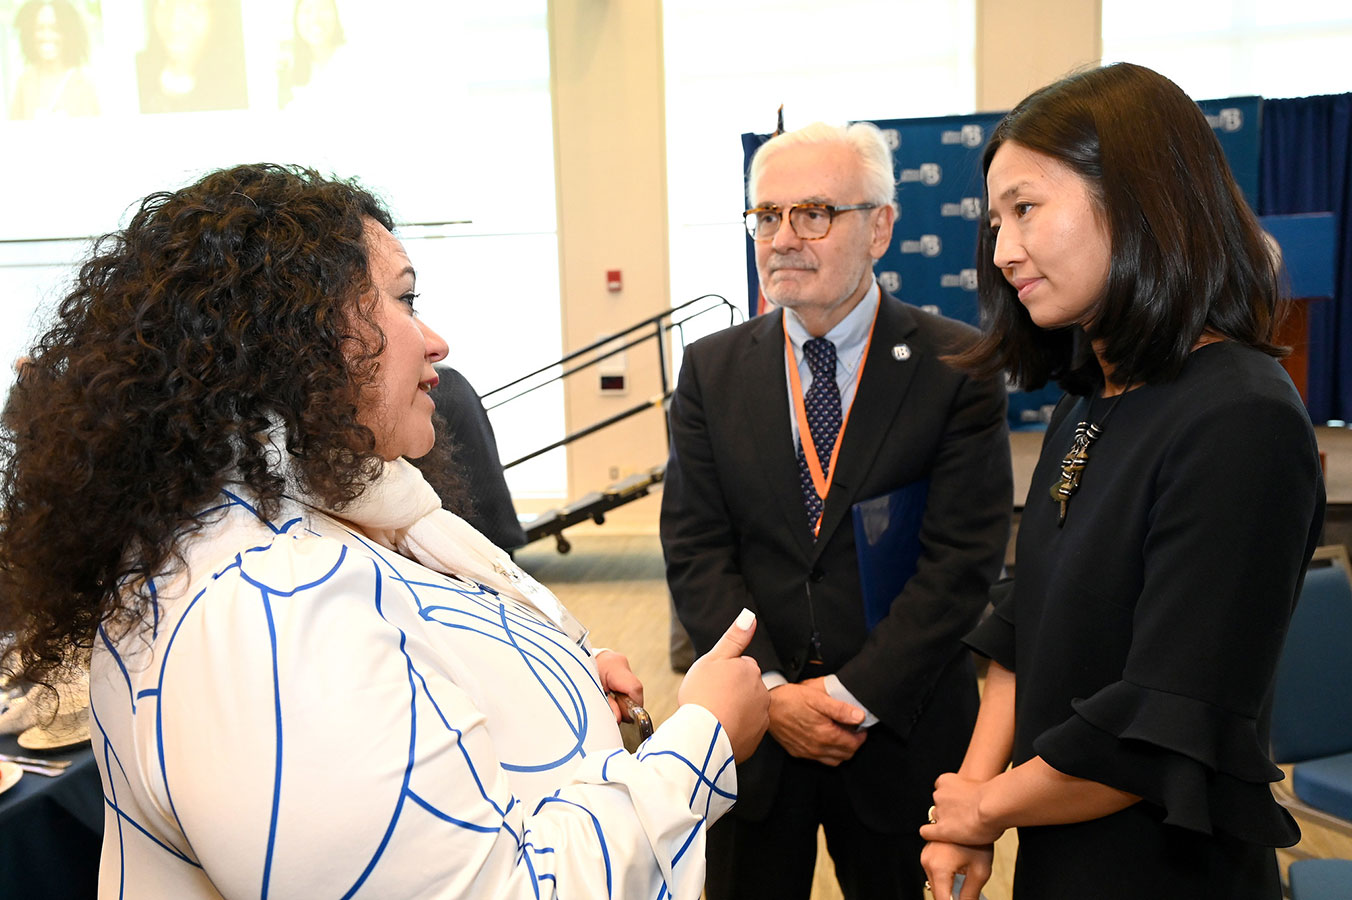 Chancellor Suarez-Orozco and Mayor Wu speak to Suha Ballout